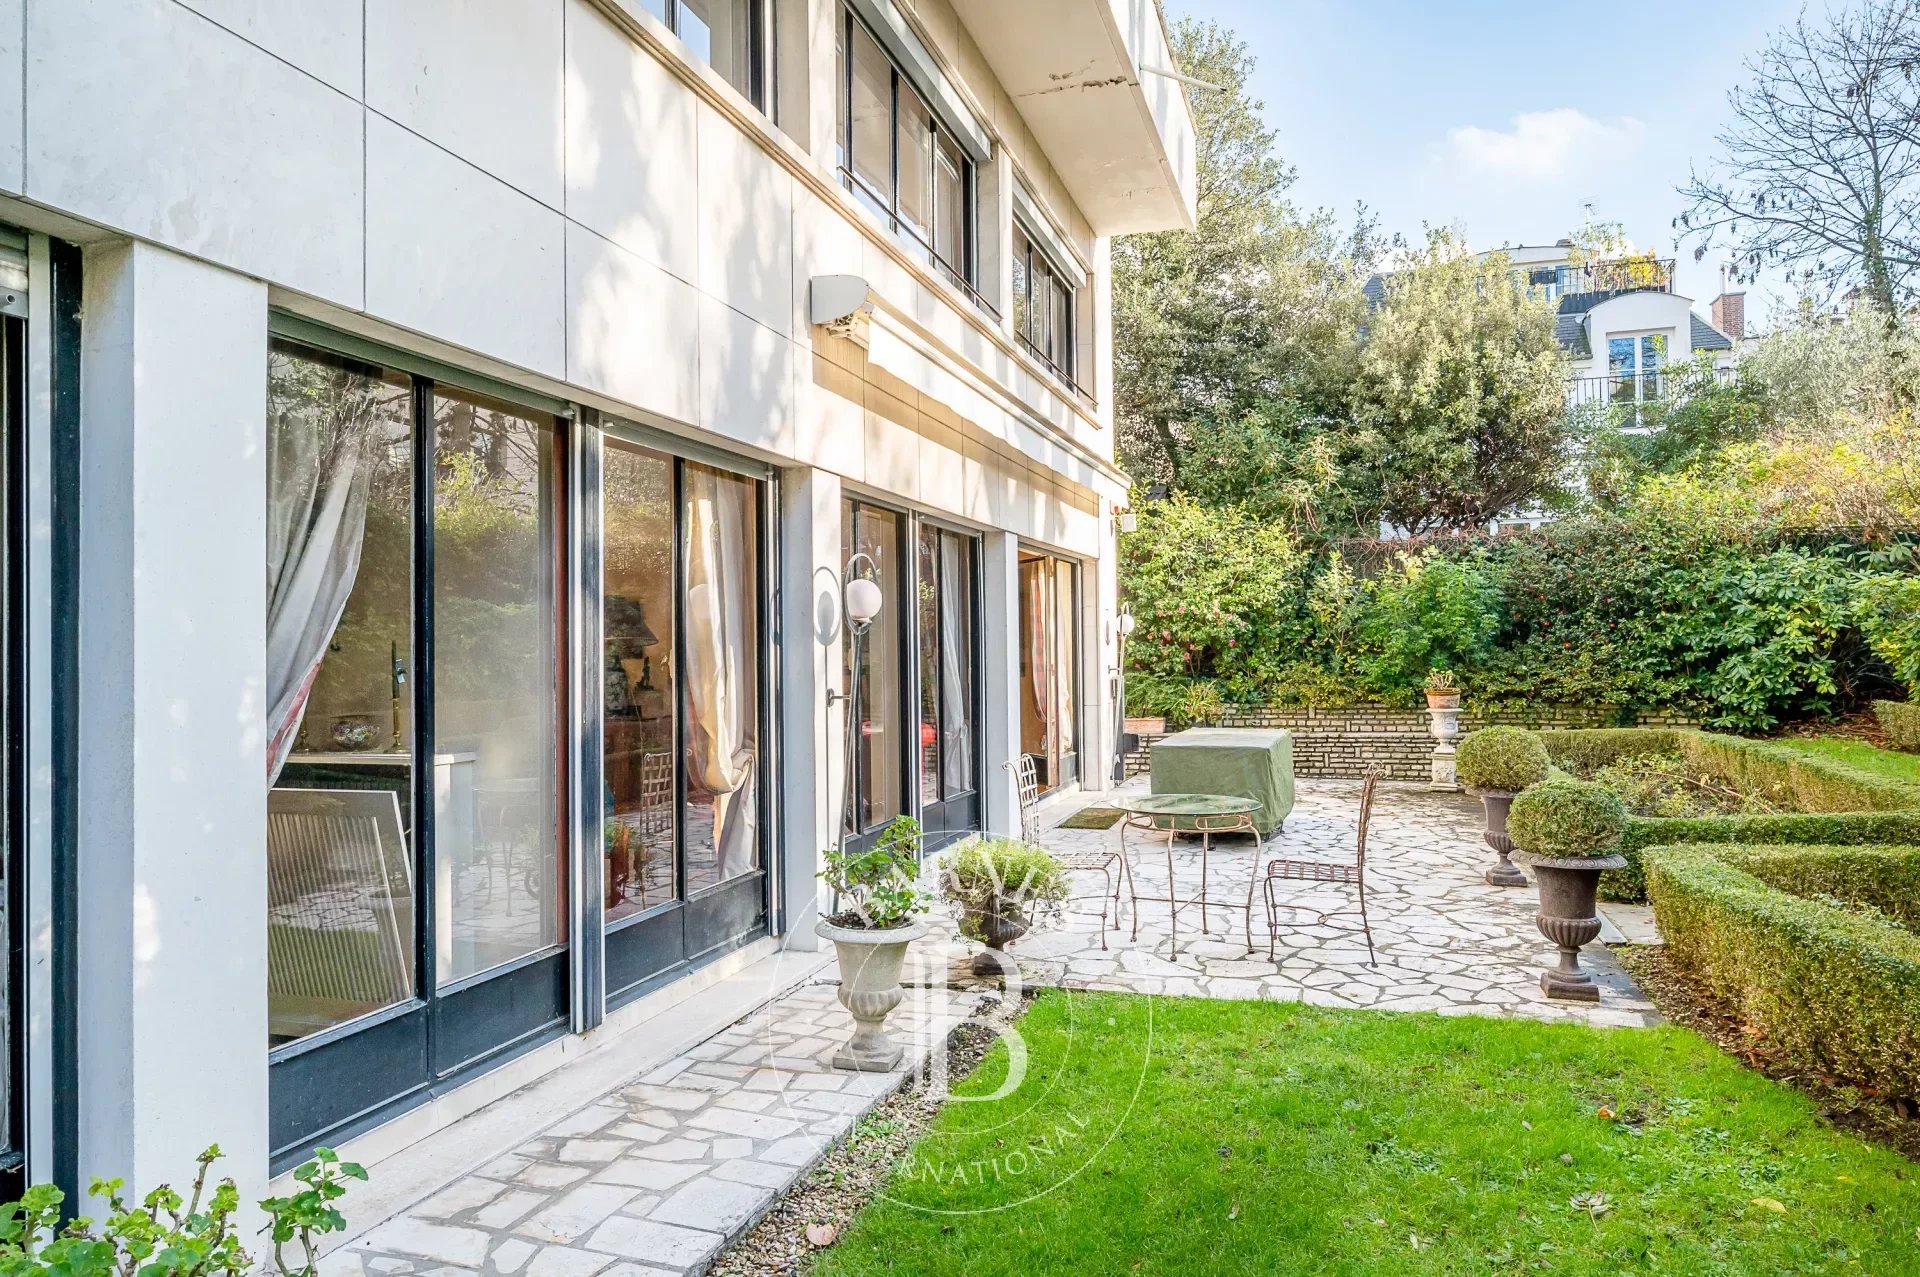 Neuilly - Longchamp-Saint James -  Appartement  4/5 chambres en rez-de-jardin comme une maison